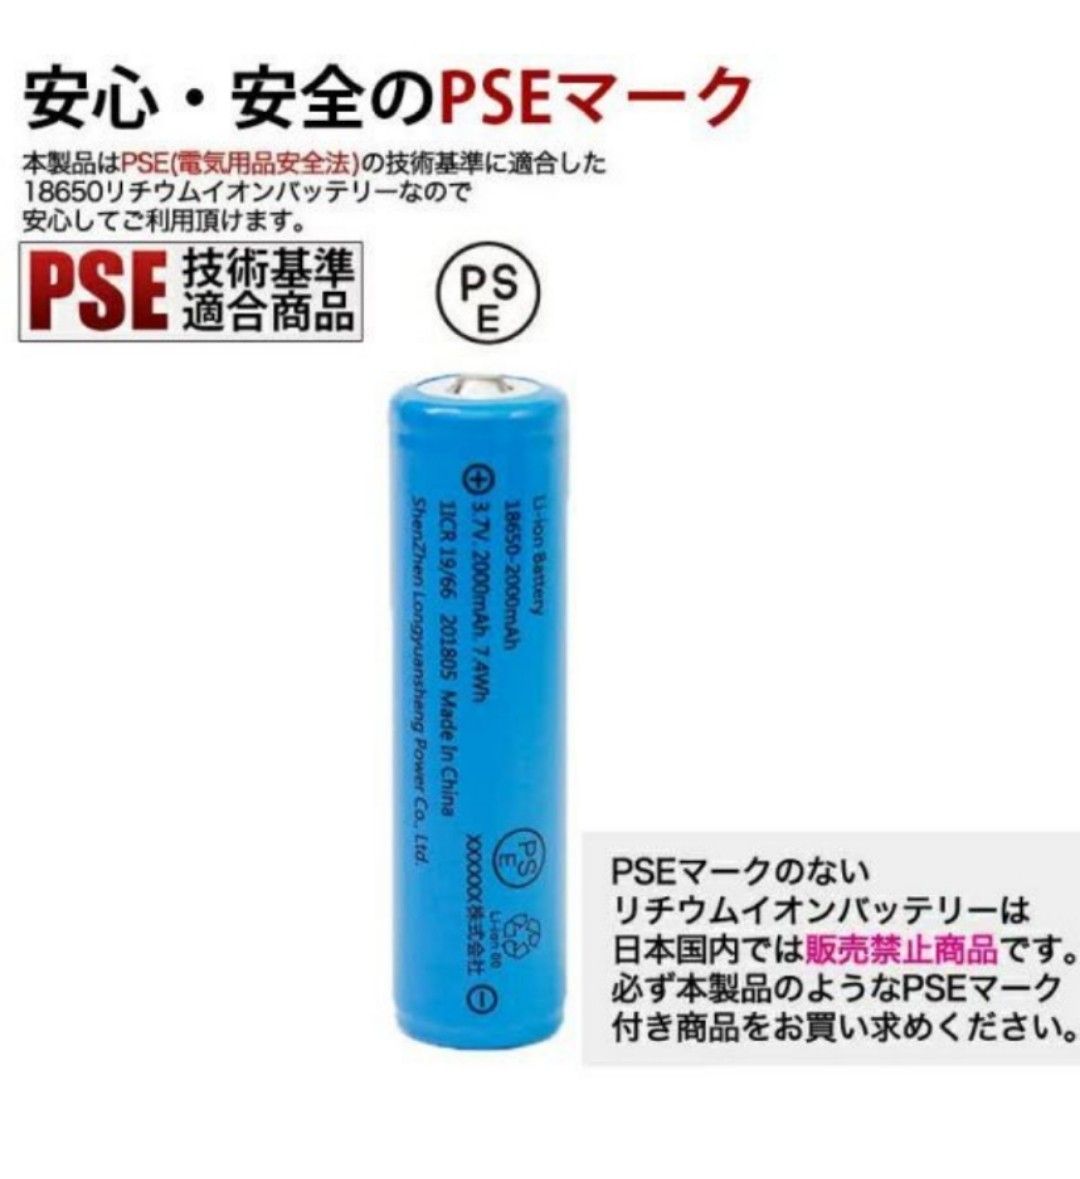 【4本セット】18650 リチウムイオン電池 バッテリー 高容量 3000mAh 3.6V PSE認証